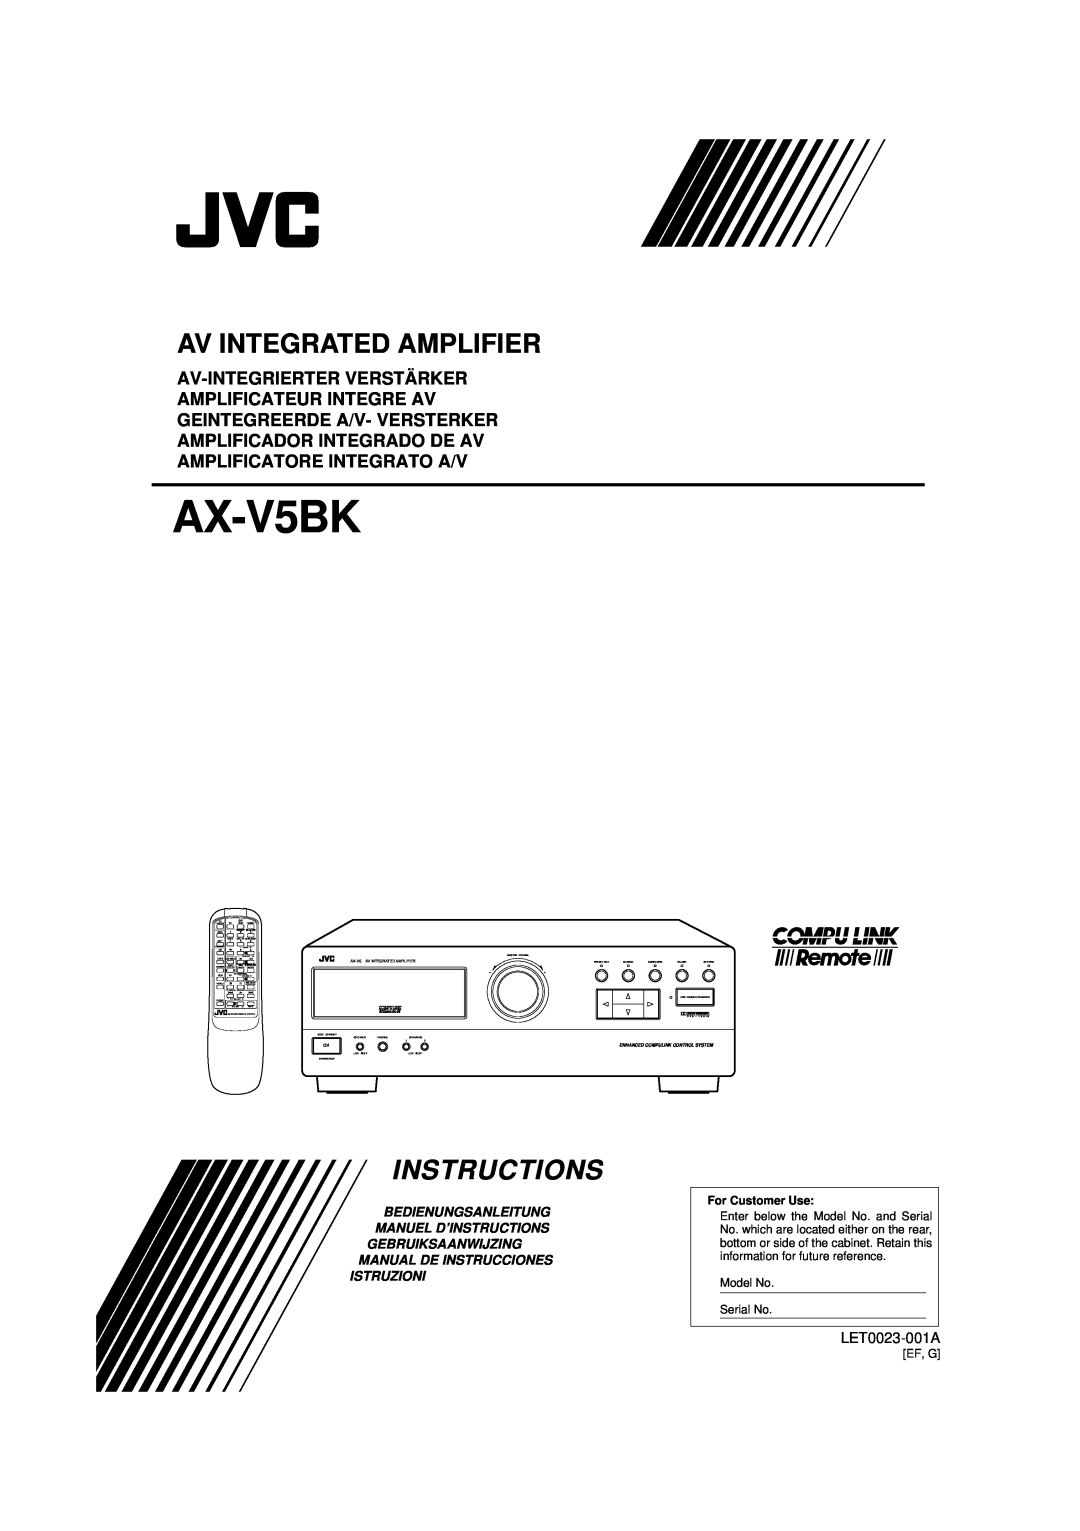 JVC AX-V5BK manual LET0023-001A, Av Integrated Amplifier, Bedienungsanleitung Manuel D’Instructions, Istruzioni 